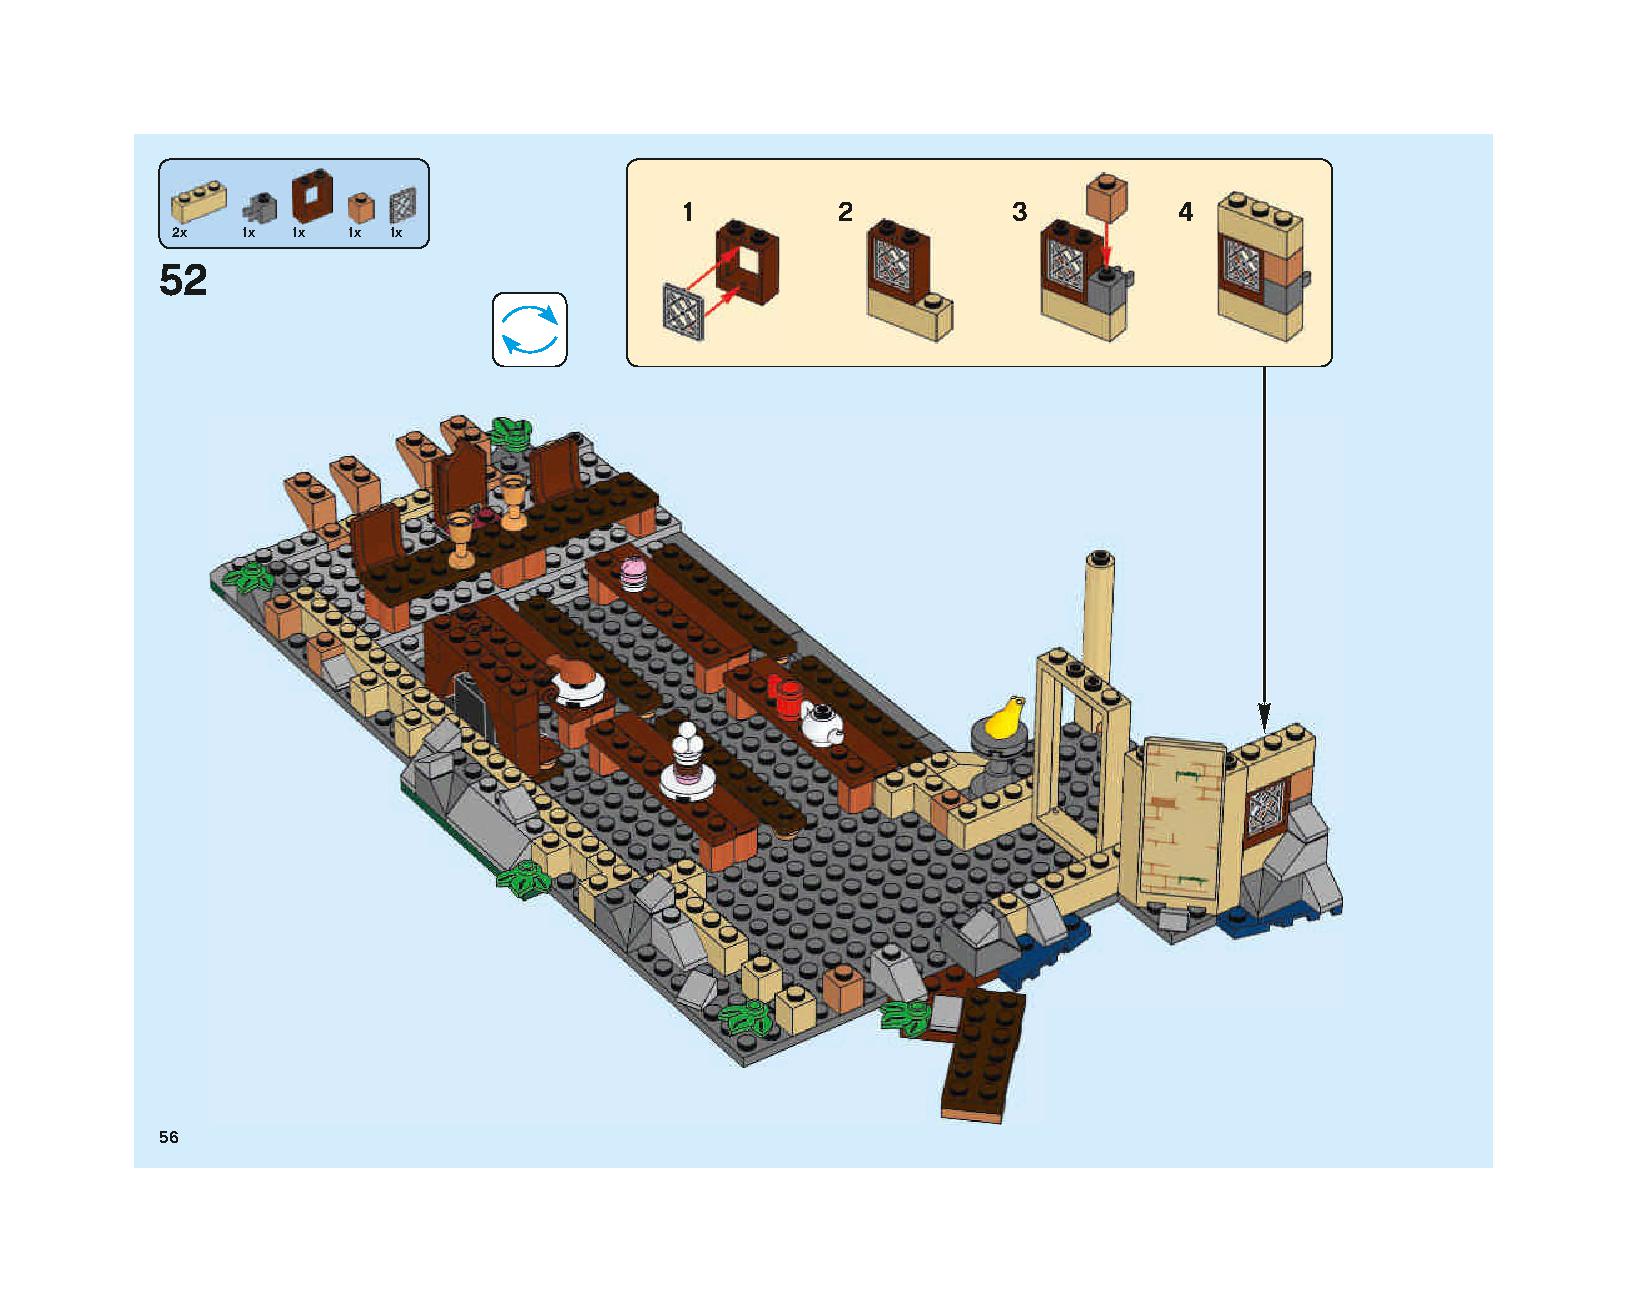 ホグワーツの大広間 75954 レゴの商品情報 レゴの説明書・組立方法 56 page